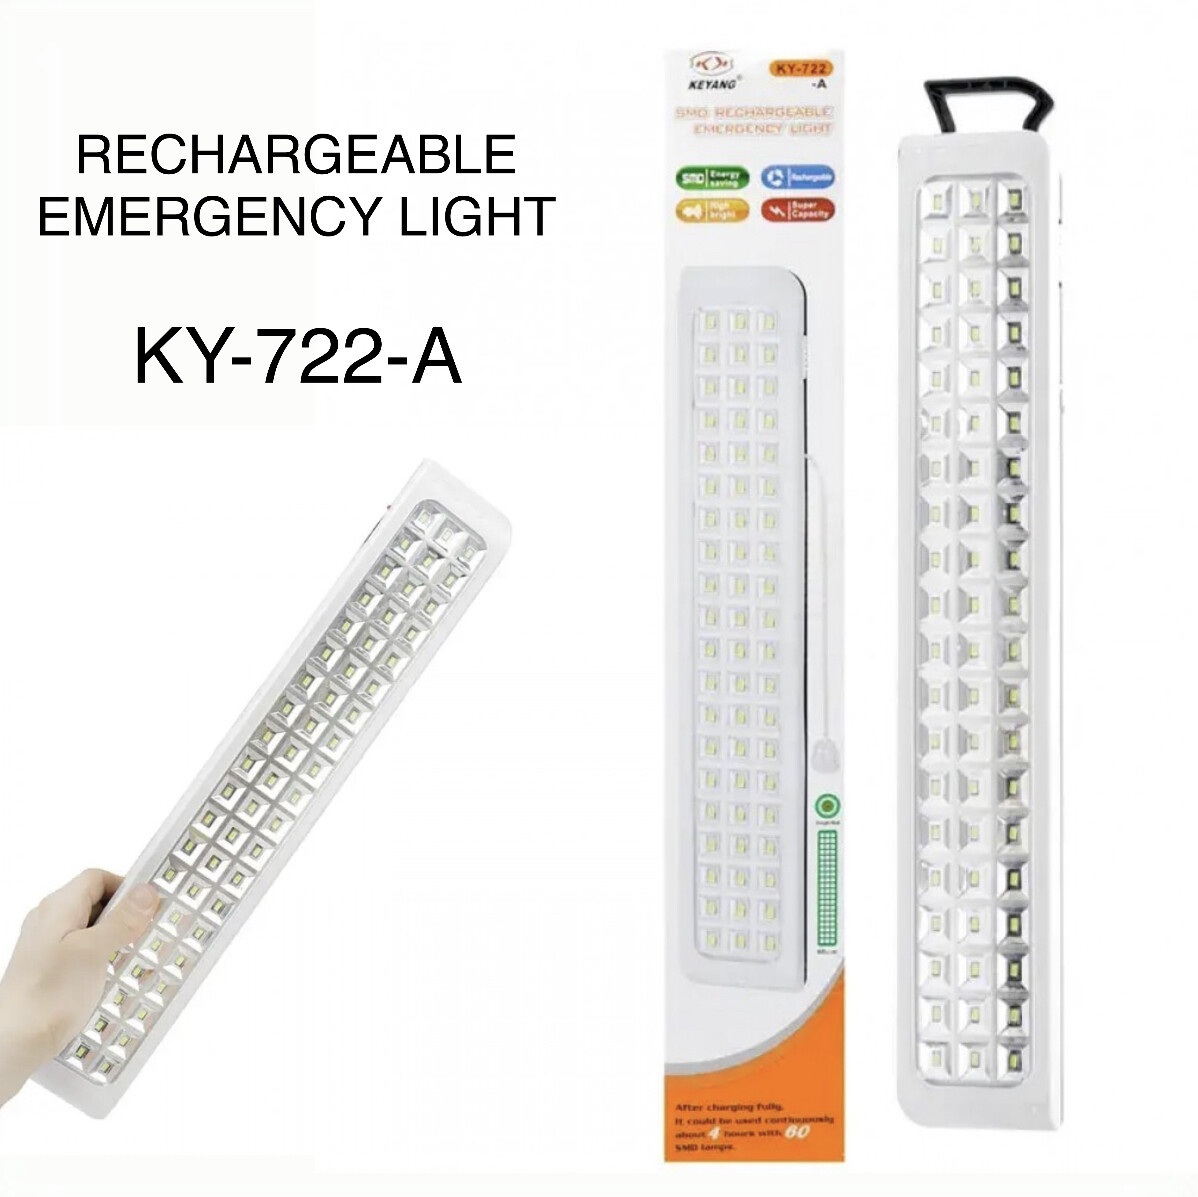 Emergency Light KY-722